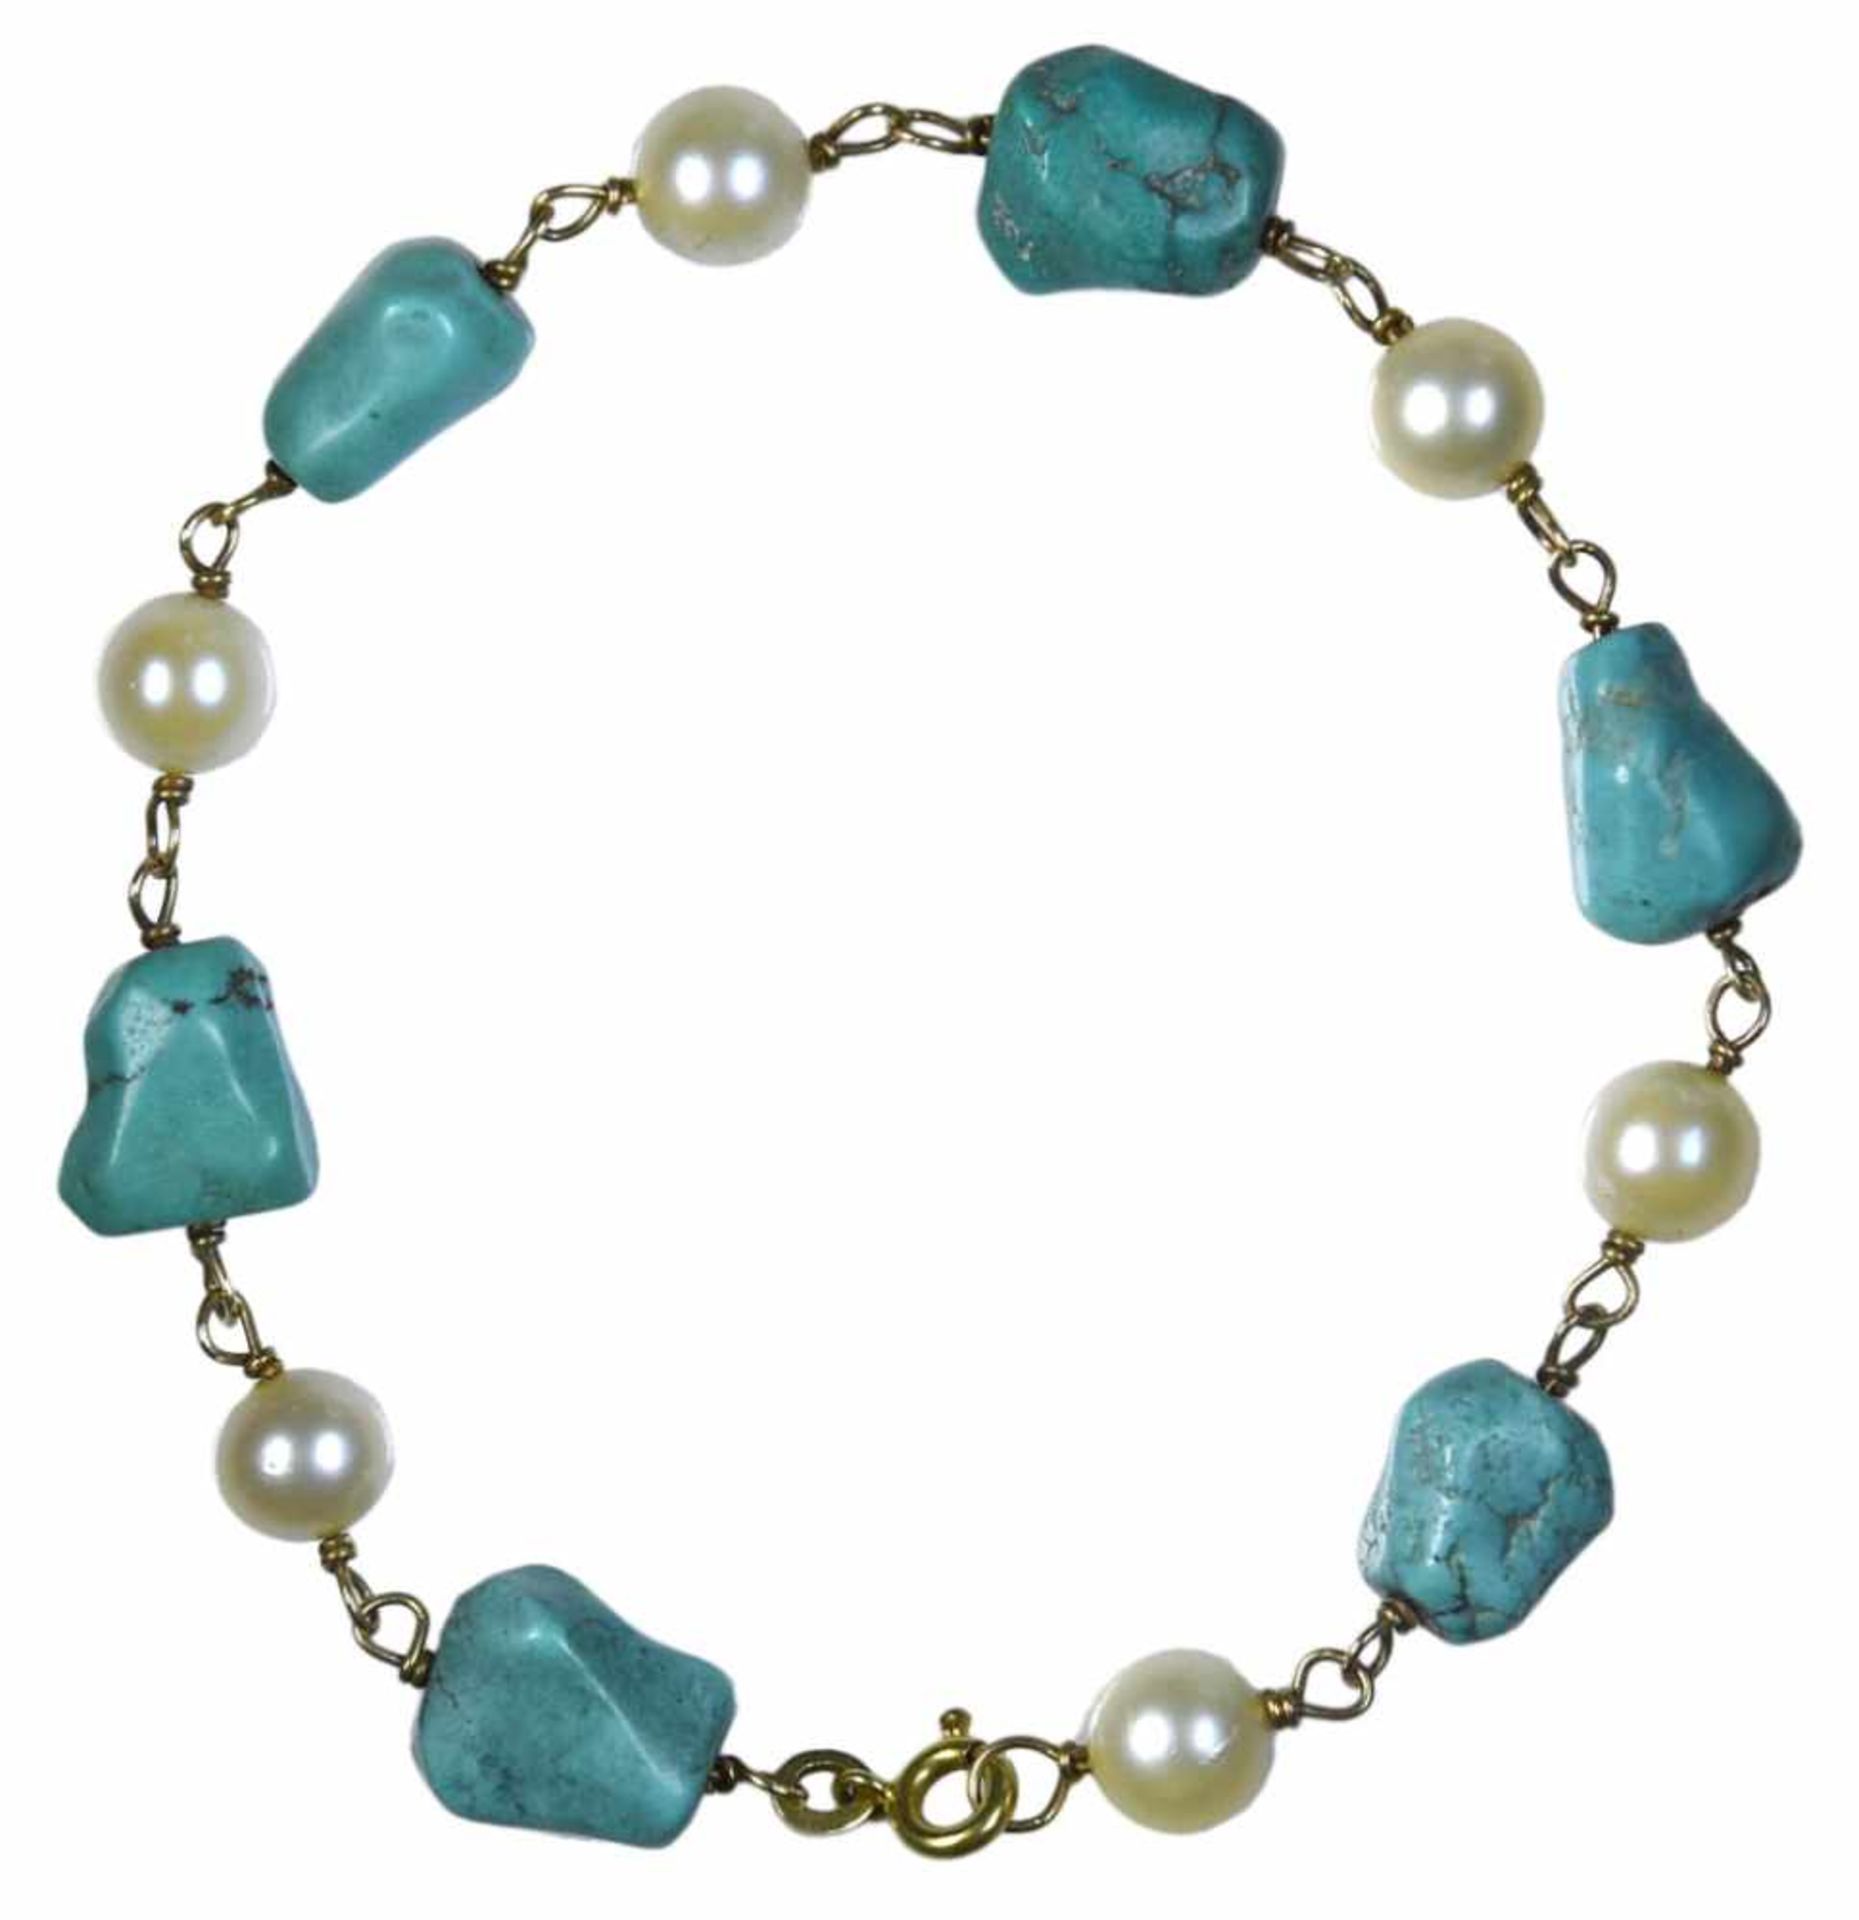 Bracelet - 18 Kt yellow gold, turquoise & pearls En or jaune 18 ct, orné de 6 turquoises et de 6